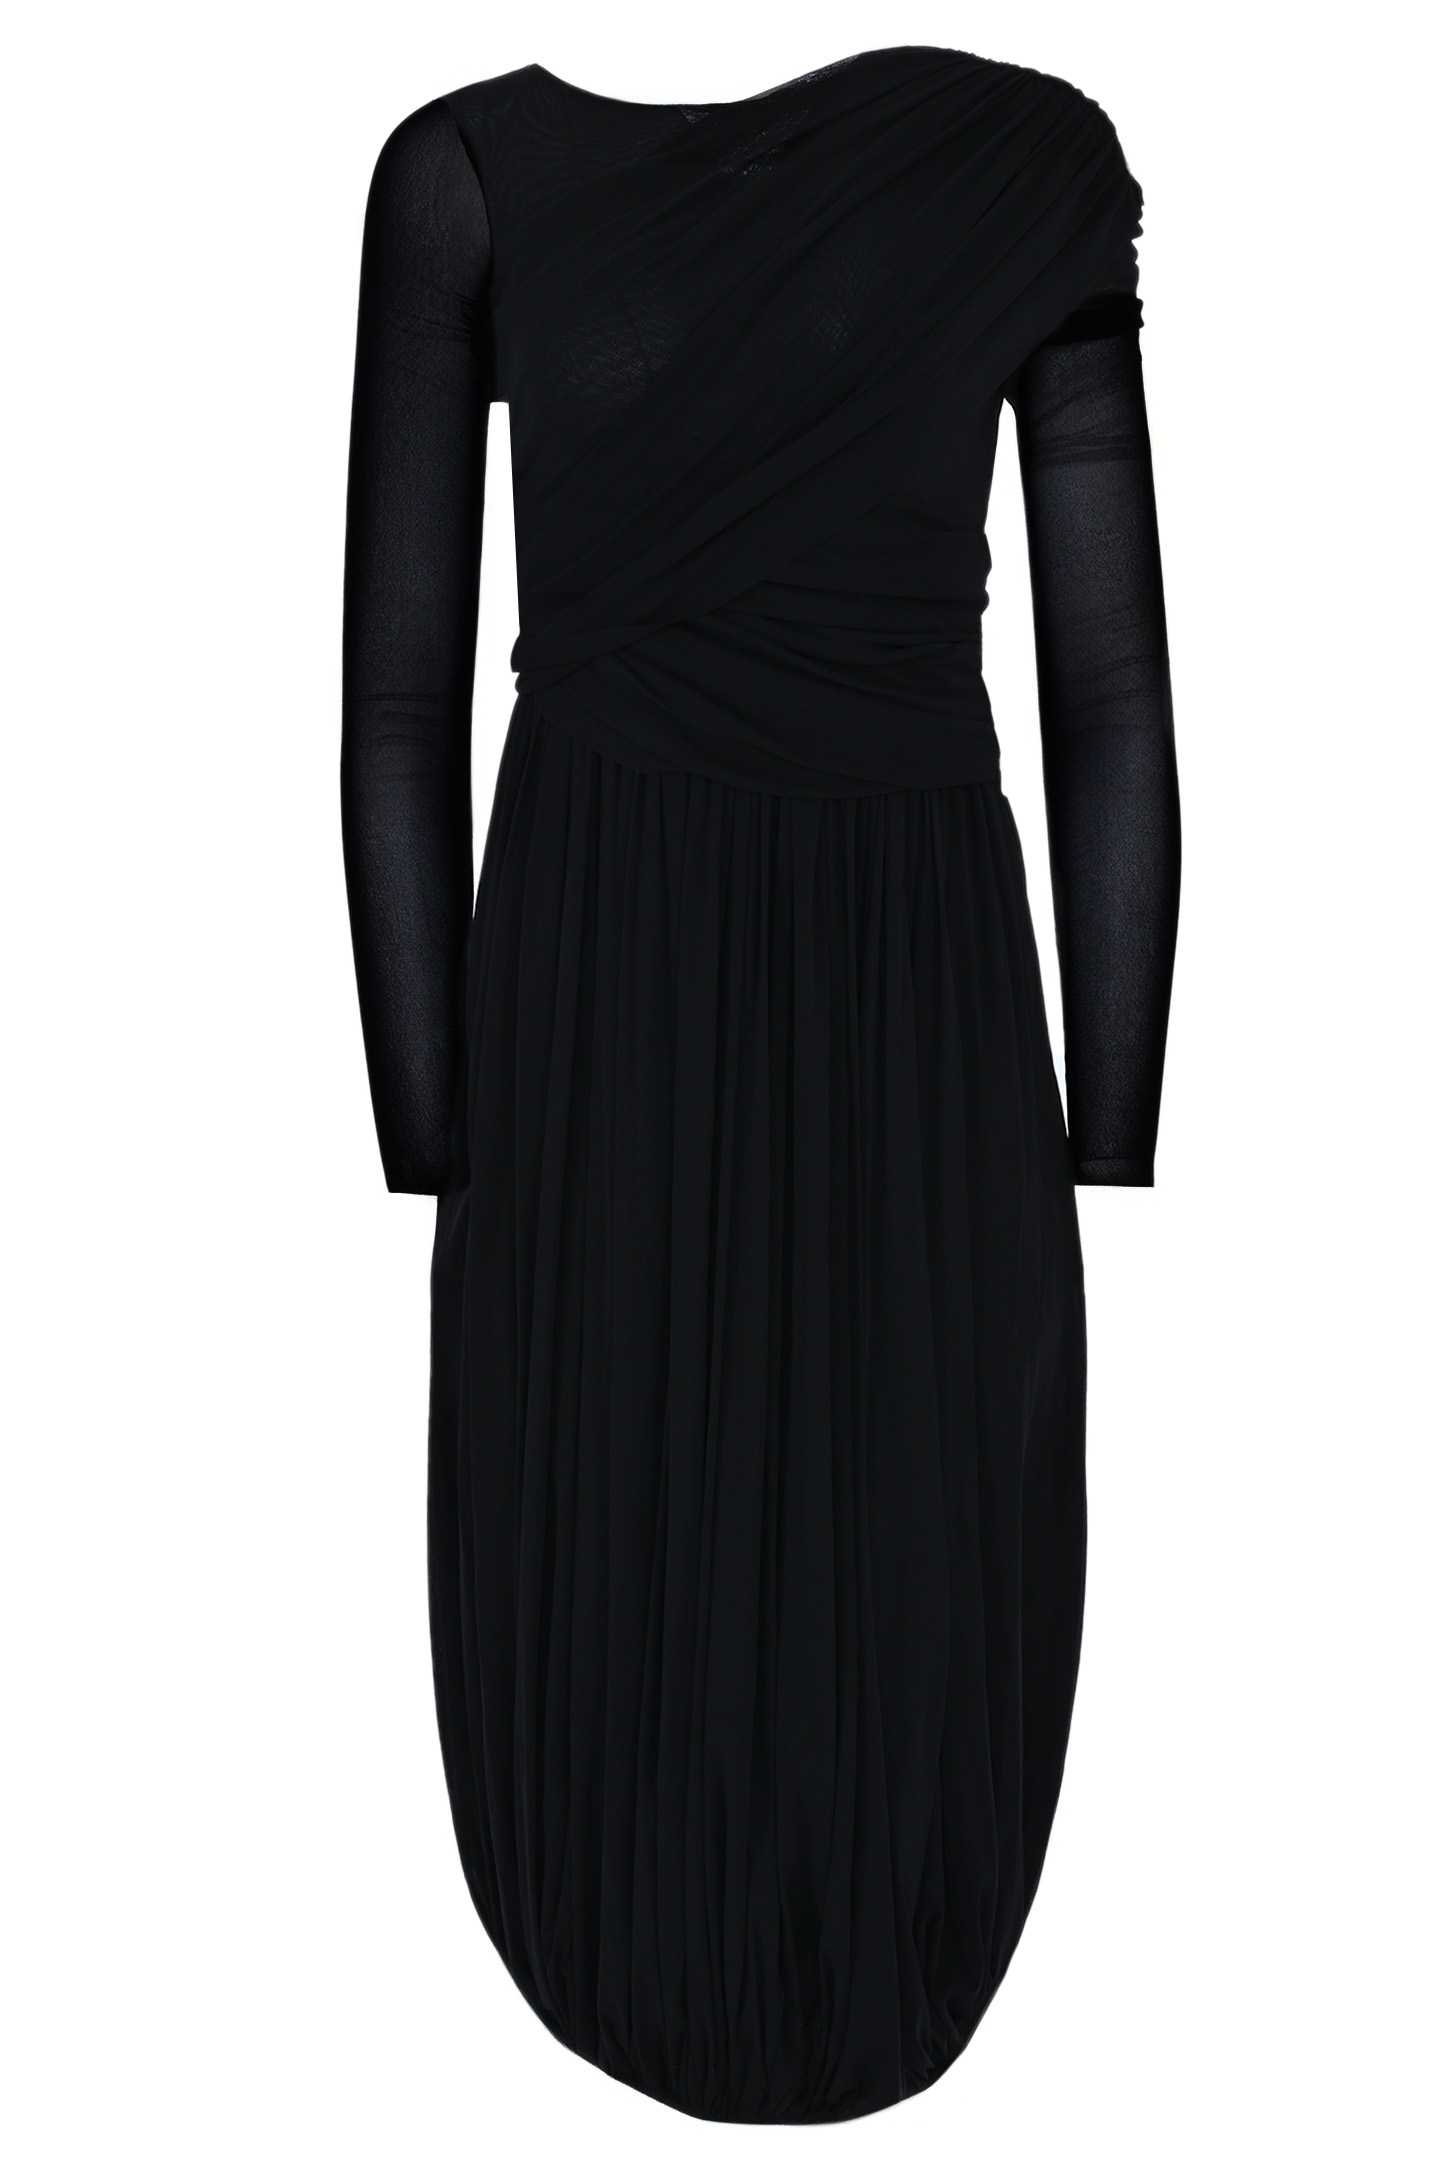 Платье PHILOSOPHY DI LORENZO SERAFINI A040571180555, цвет: Черный, Женский